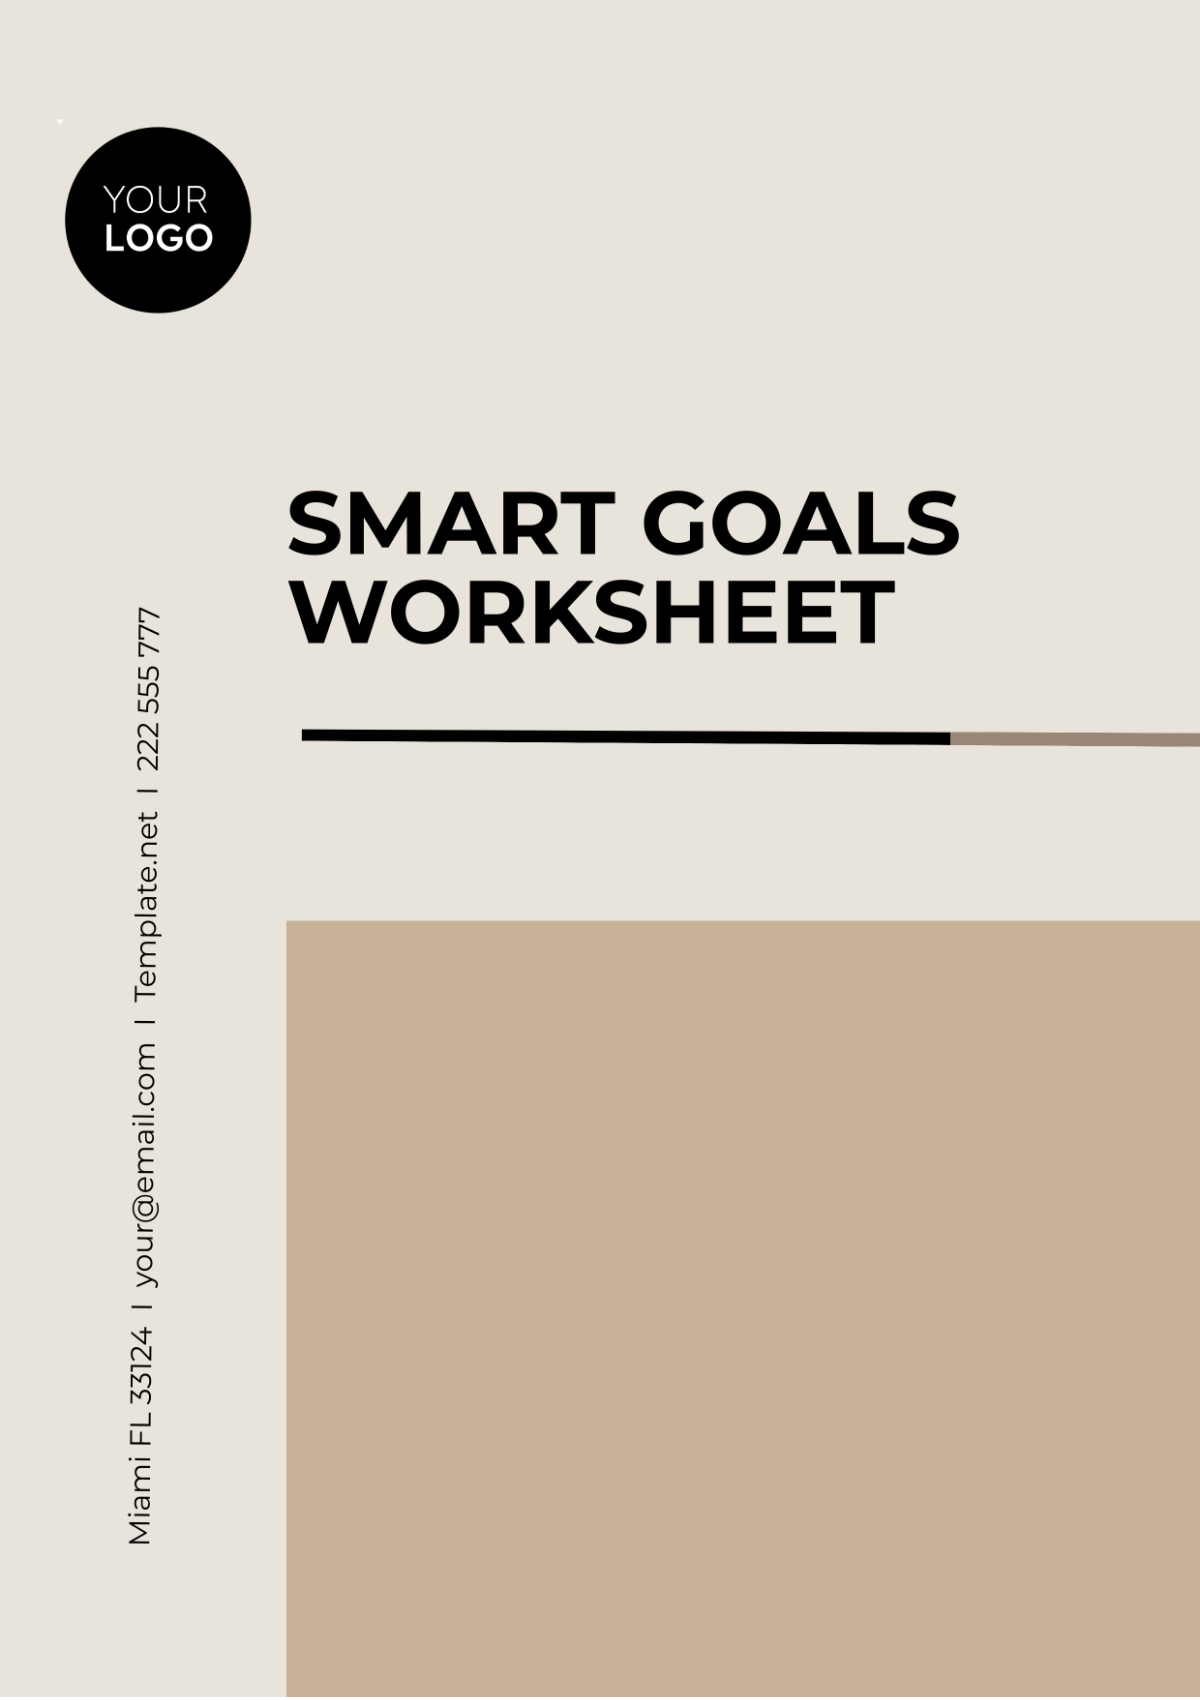 SMART Goals Worksheet Template